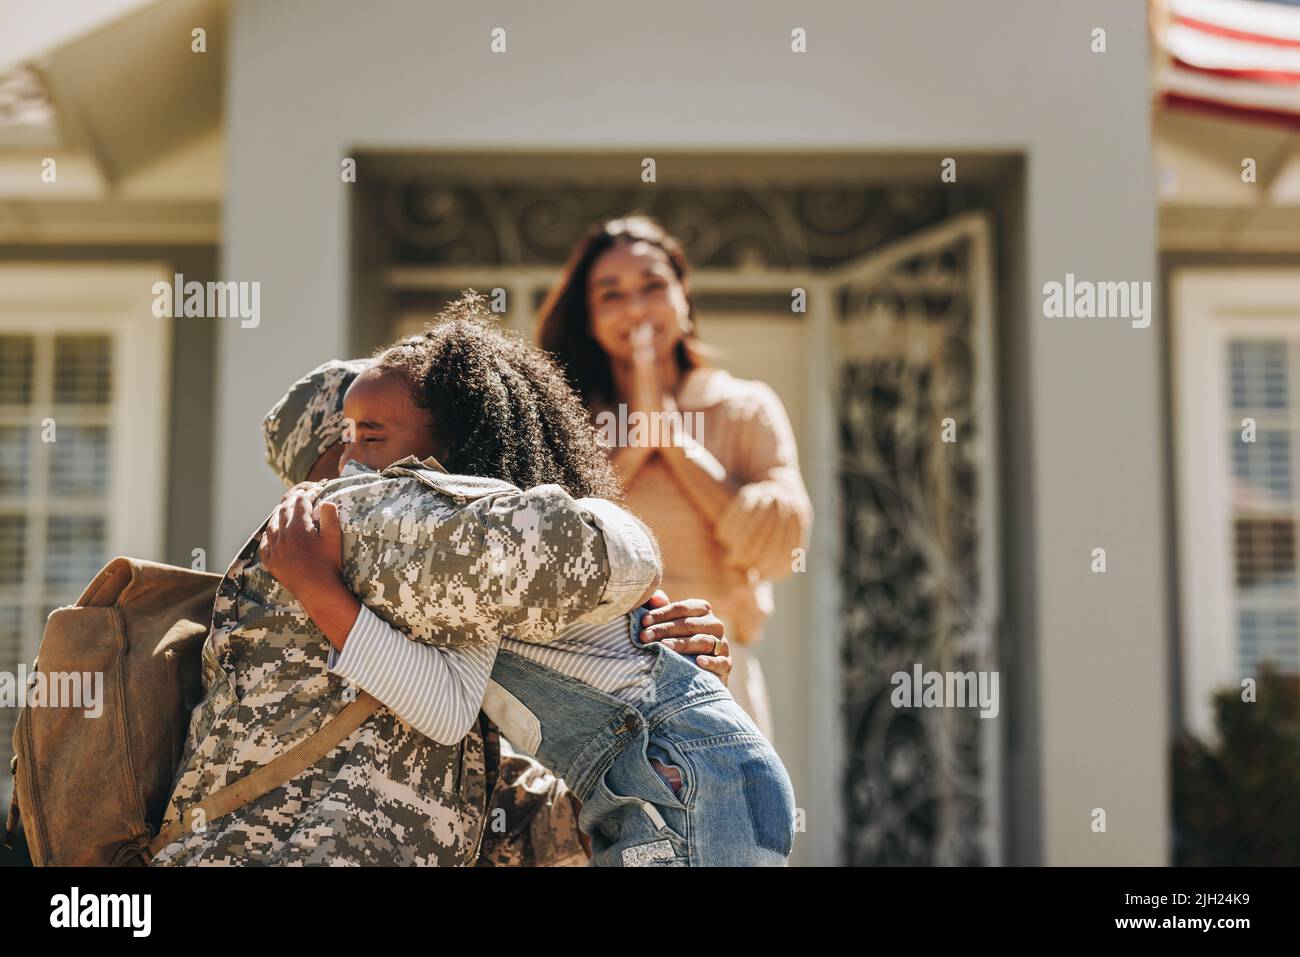 Militärangehöriger sagt Auf Wiedersehen zu seiner Familie, bevor er zum Krieg geht. Amerikanischer Militärangehöriger umarmt seine Tochter. Patriotischer Soldat, der seine Familie verlassen hat Stockfoto